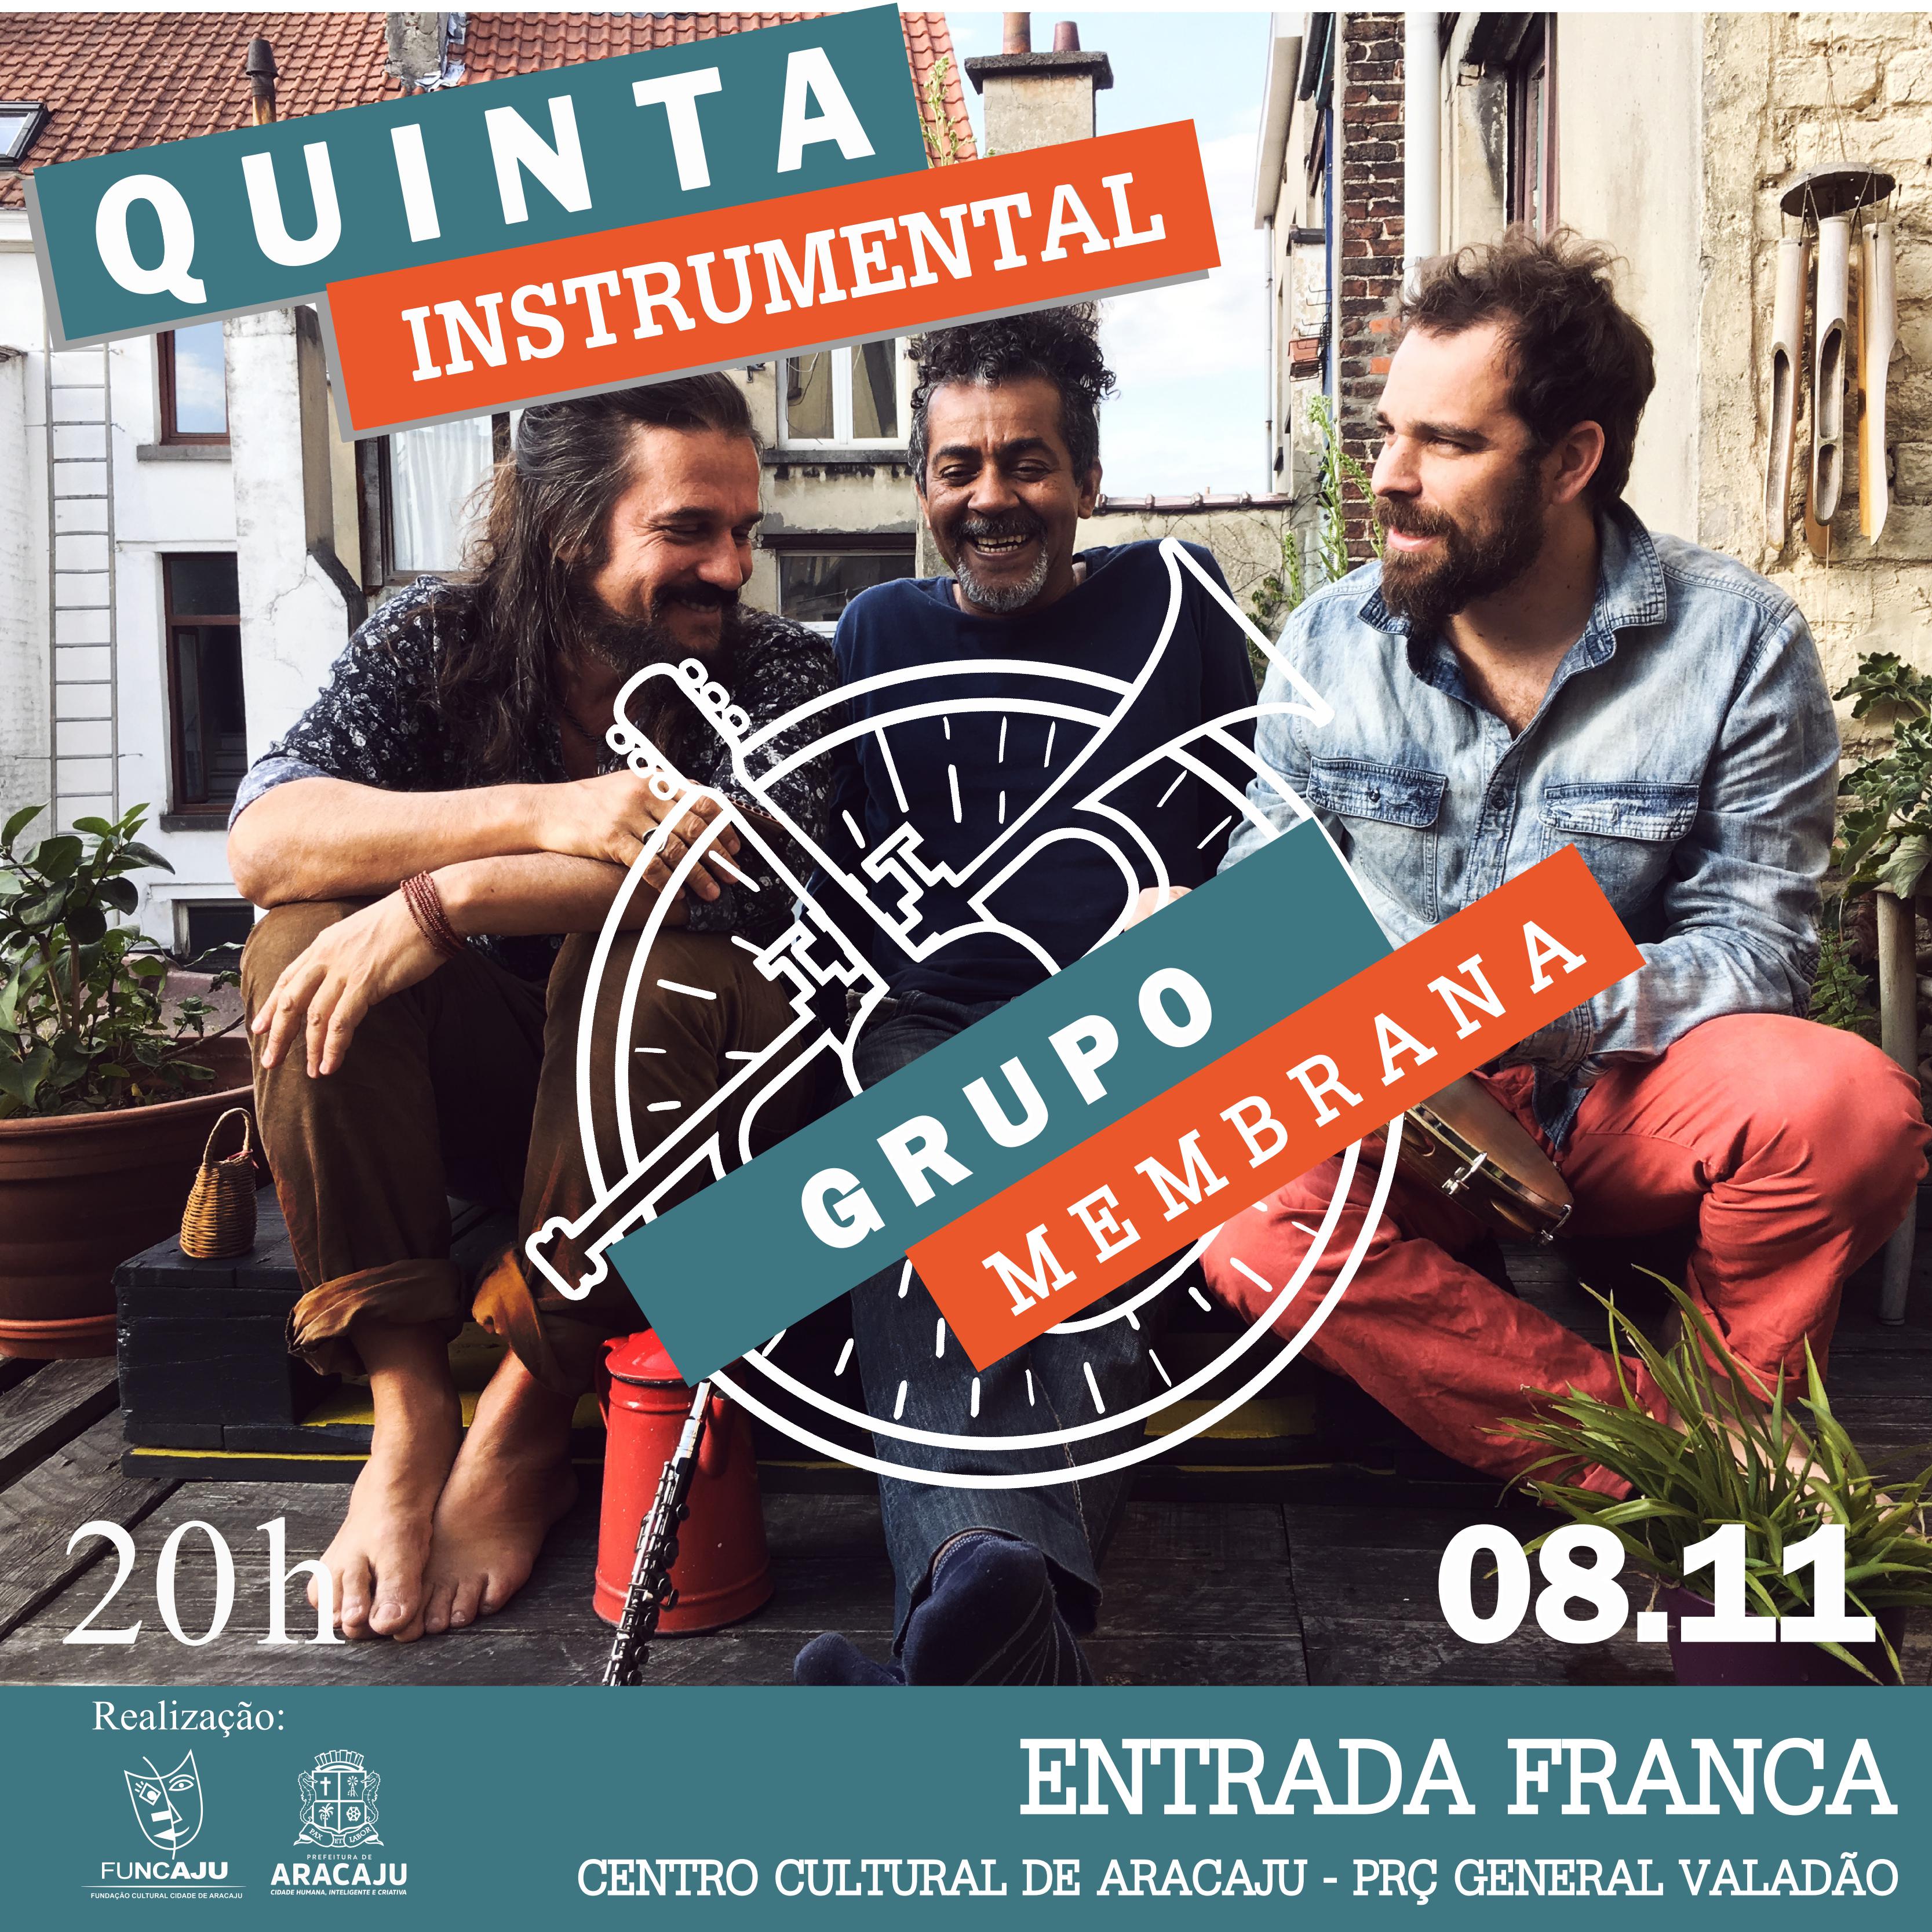 Banda Membrana promete show com muitas surpresas no Quinta Instrumental